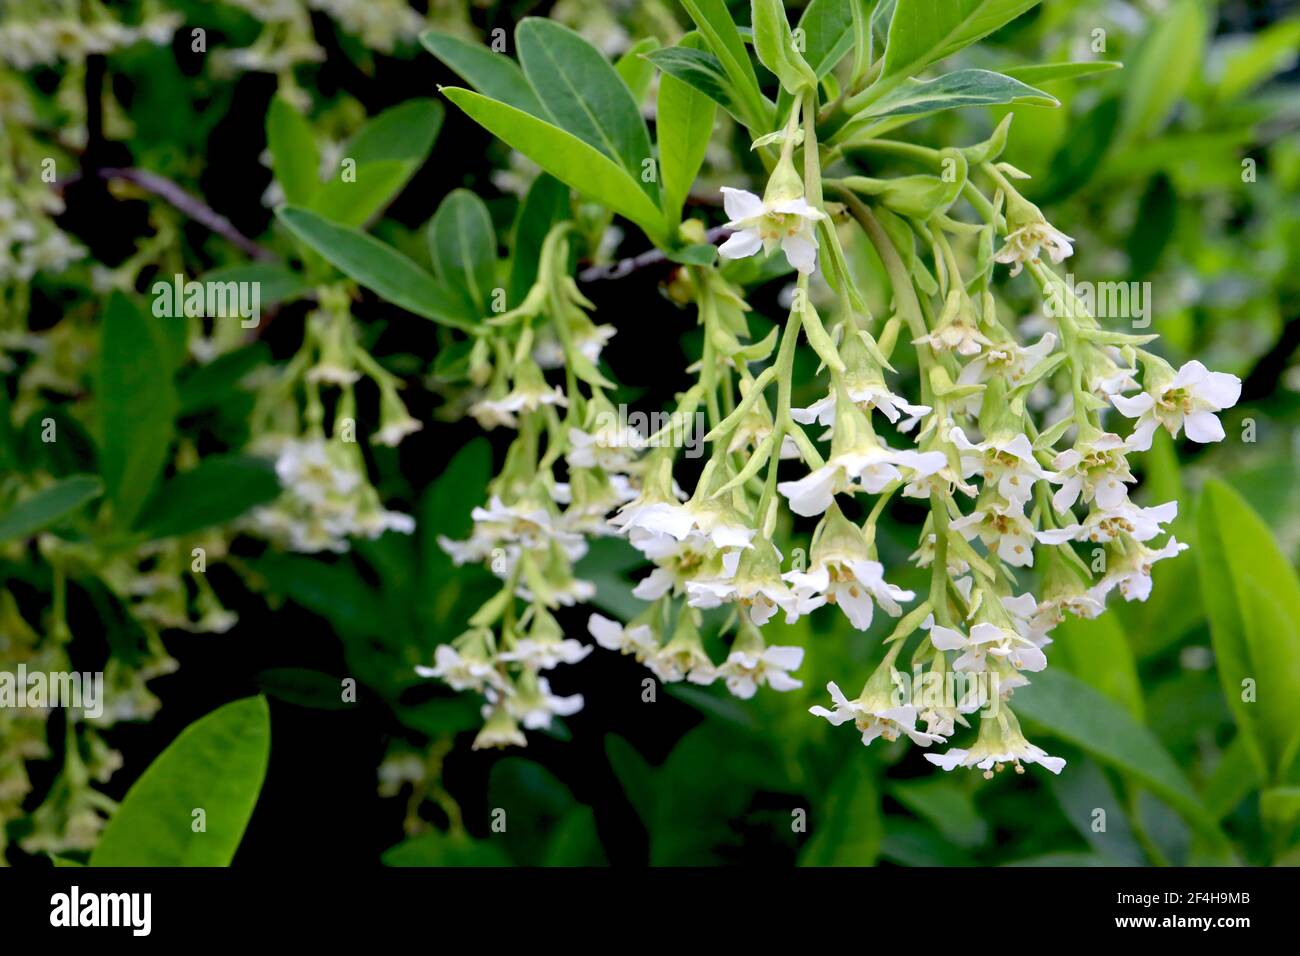 Oemleria cerasiformis Oso Beere / Osoberry – Trauben hängender weißer Blüten, März, England, Großbritannien Stockfoto